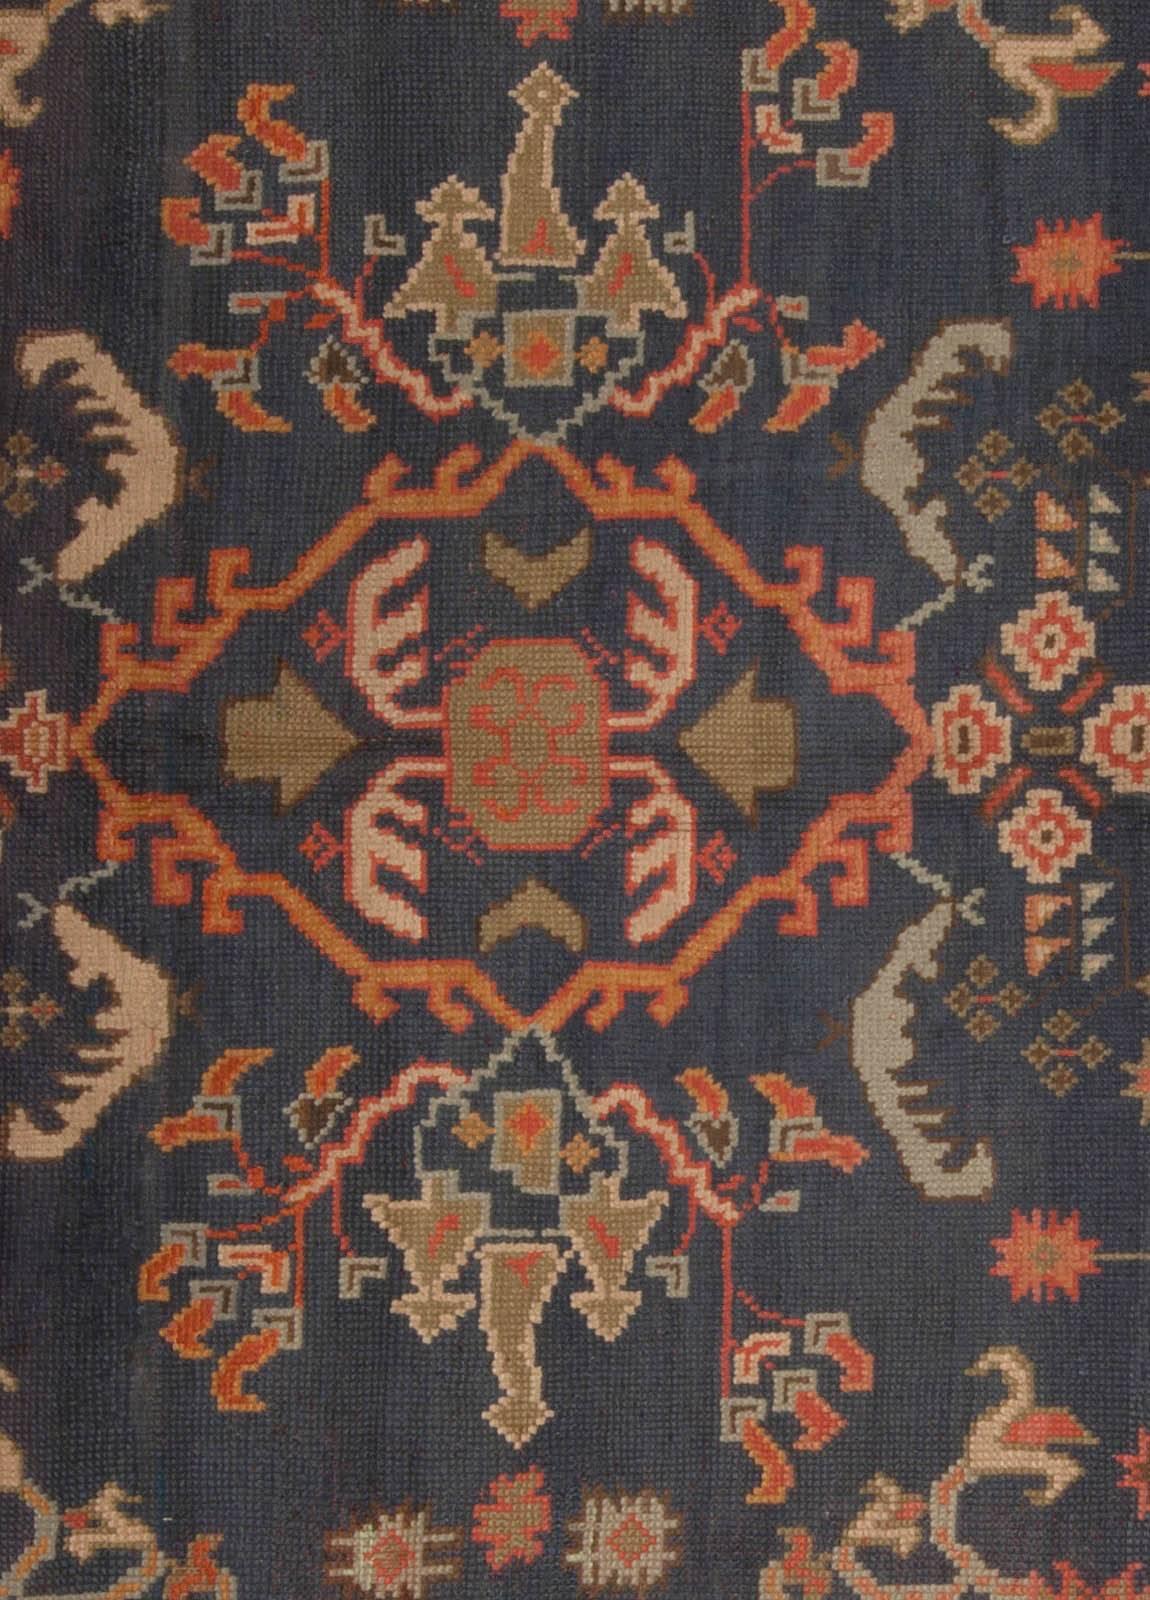 Antique Turkish Oushak blue handmade wool rug
Size: 9'0